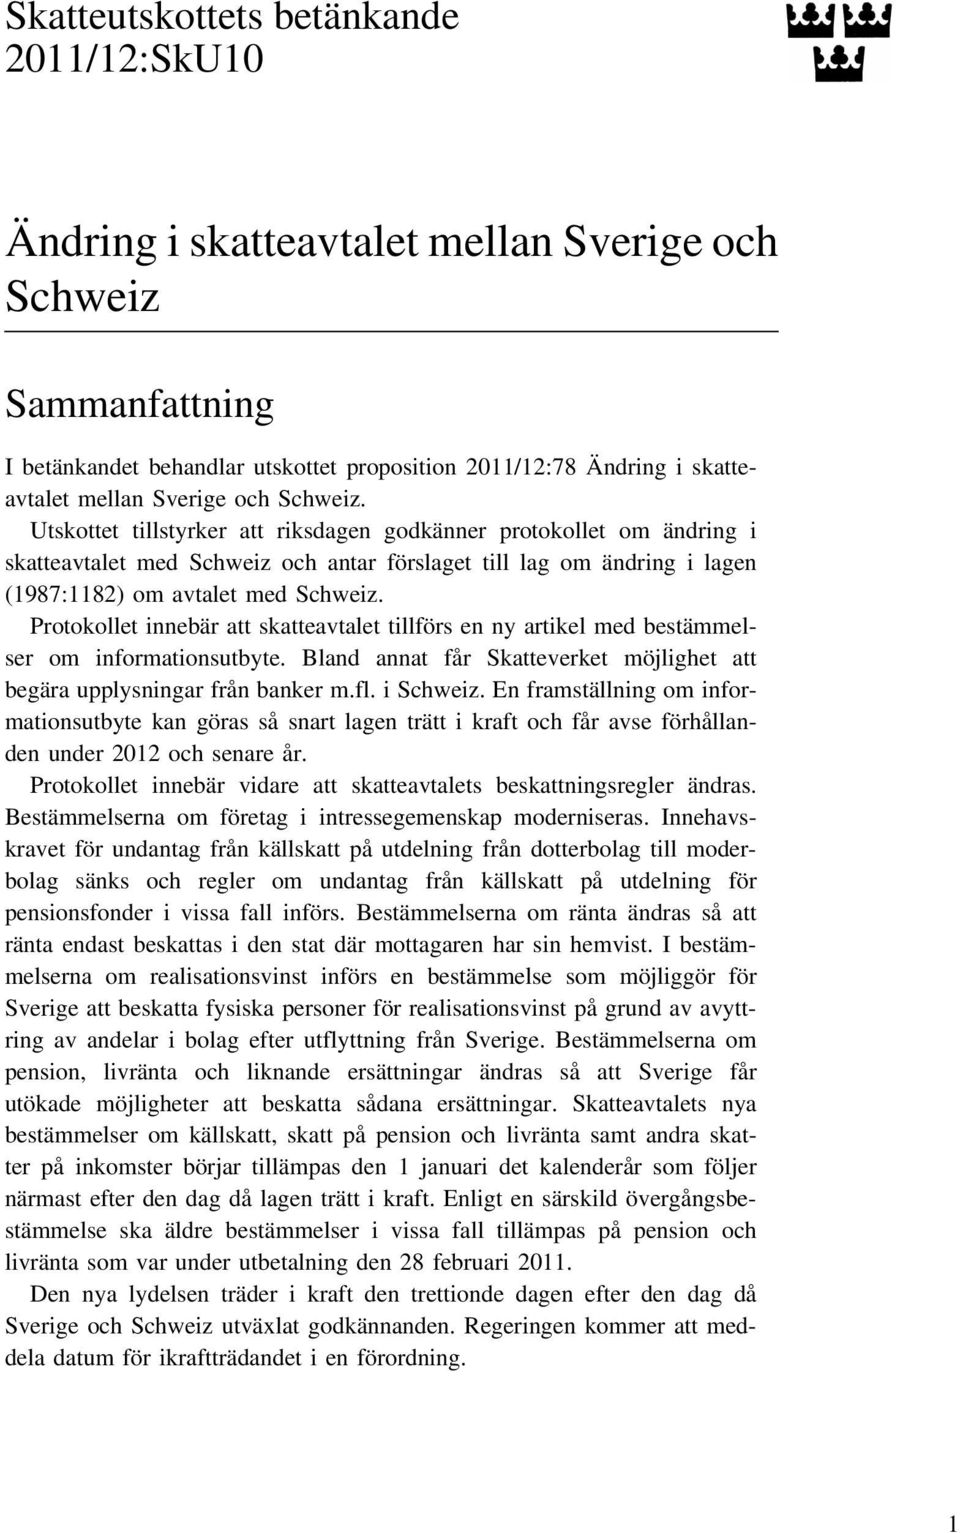 Utskottet tillstyrker att riksdagen godkänner protokollet om ändring i skatteavtalet med Schweiz och antar förslaget till lag om ändring i lagen (1987:1182) om avtalet med Schweiz.